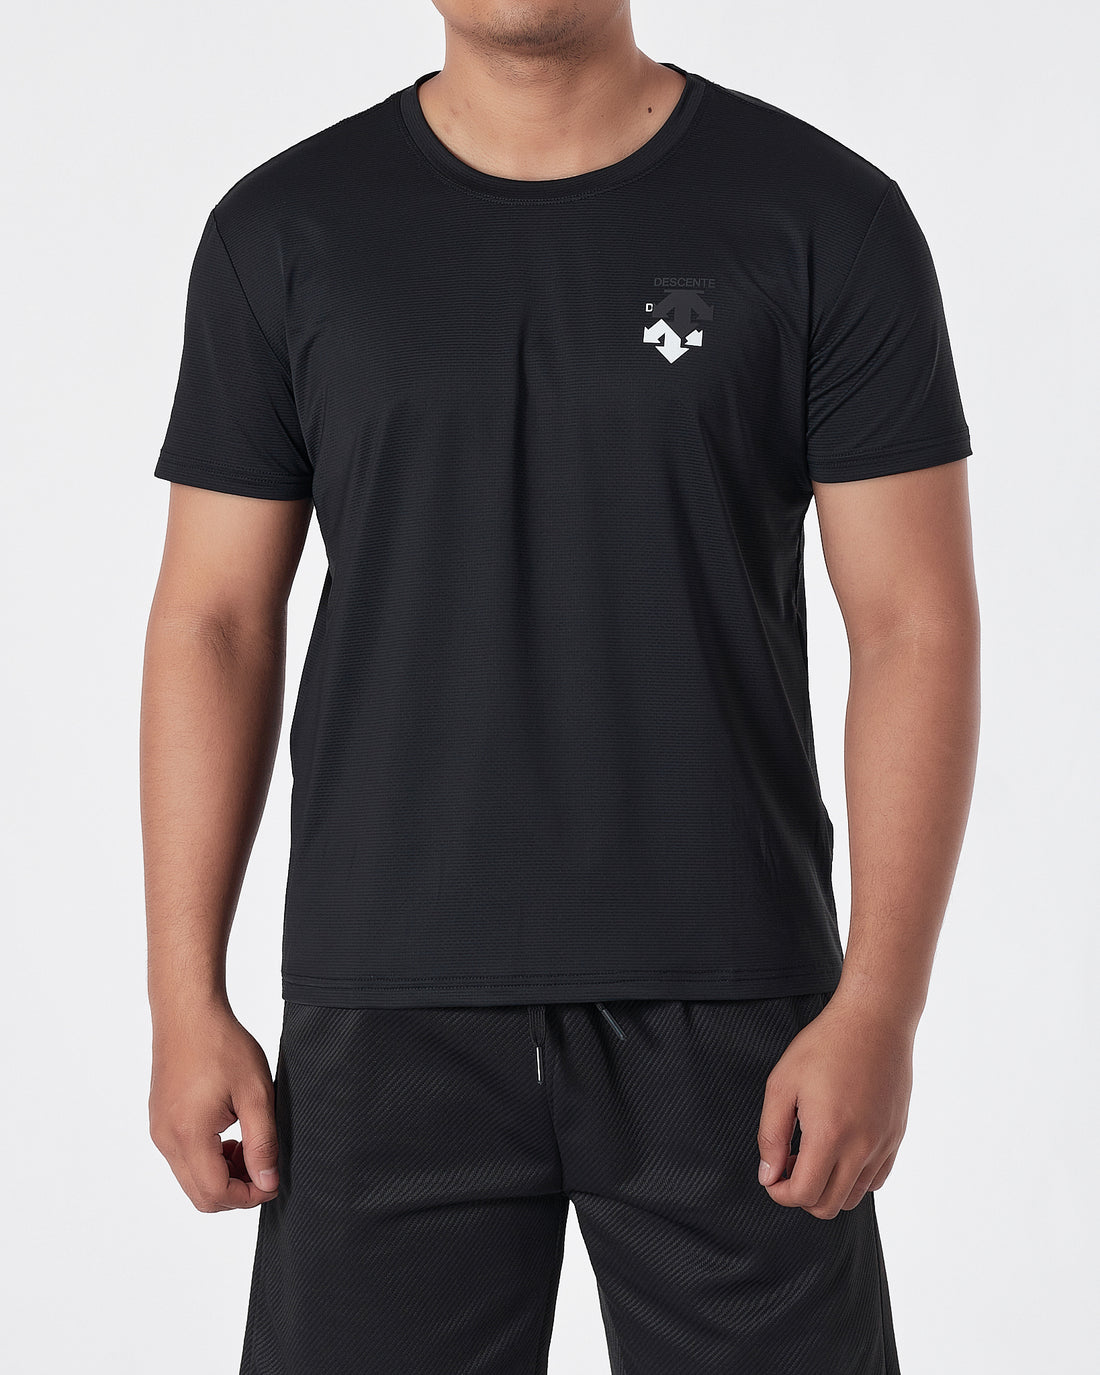 DES Logo Printed Men Black Sport T-Shirt 13.50